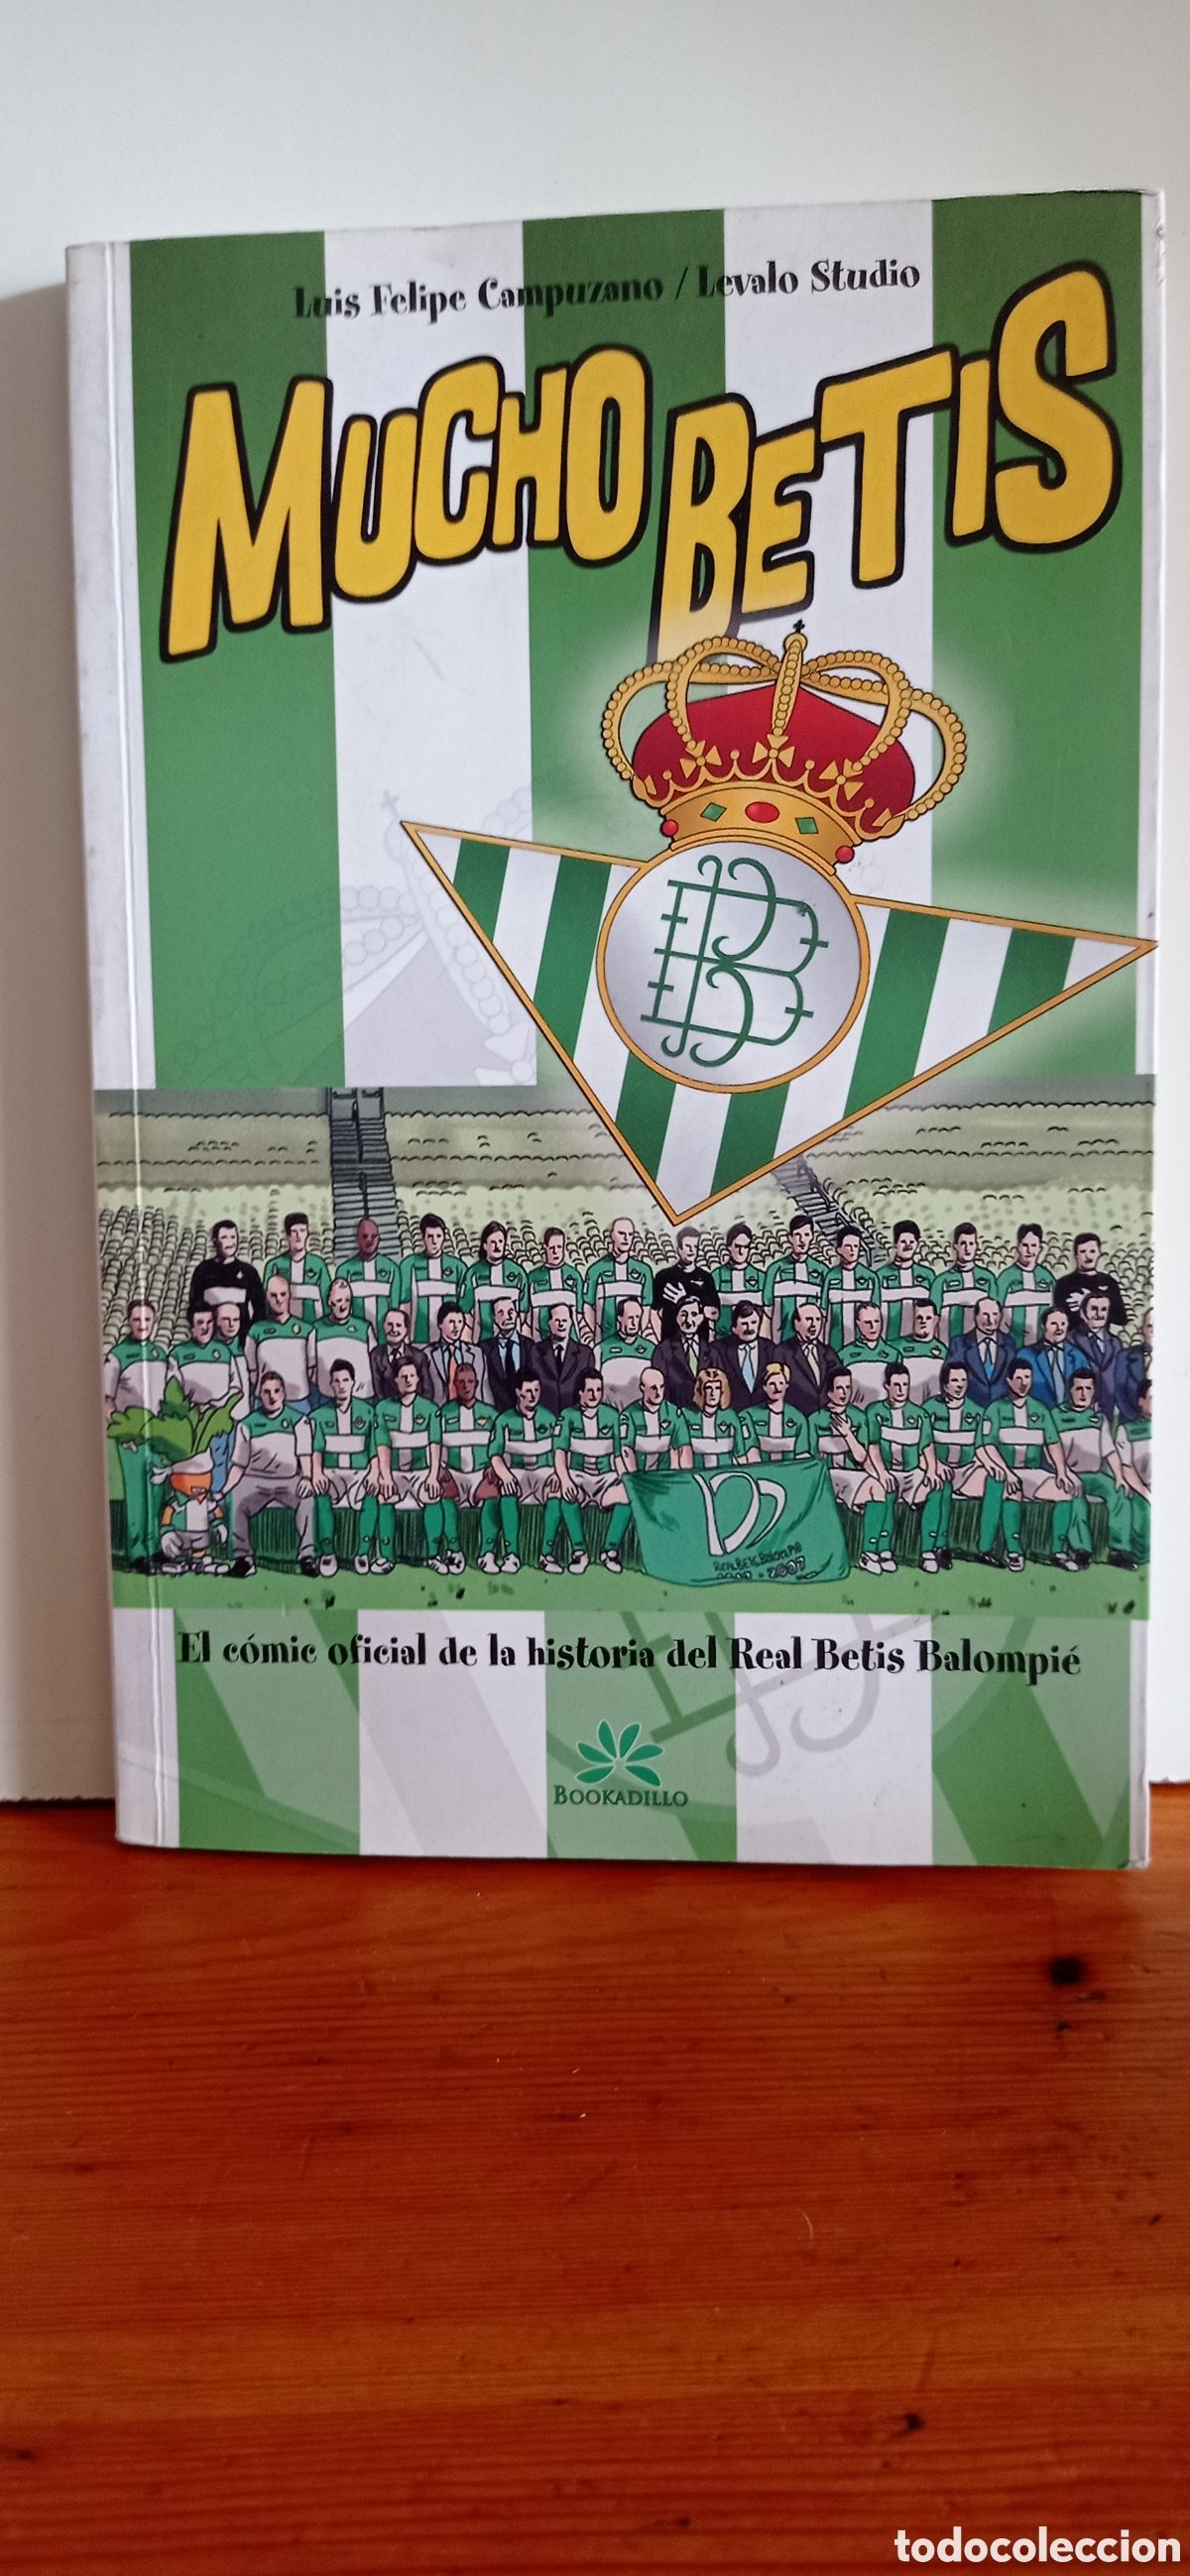 Libro Mucho Betis: Cómic Oficial de la Historia del Real Betis